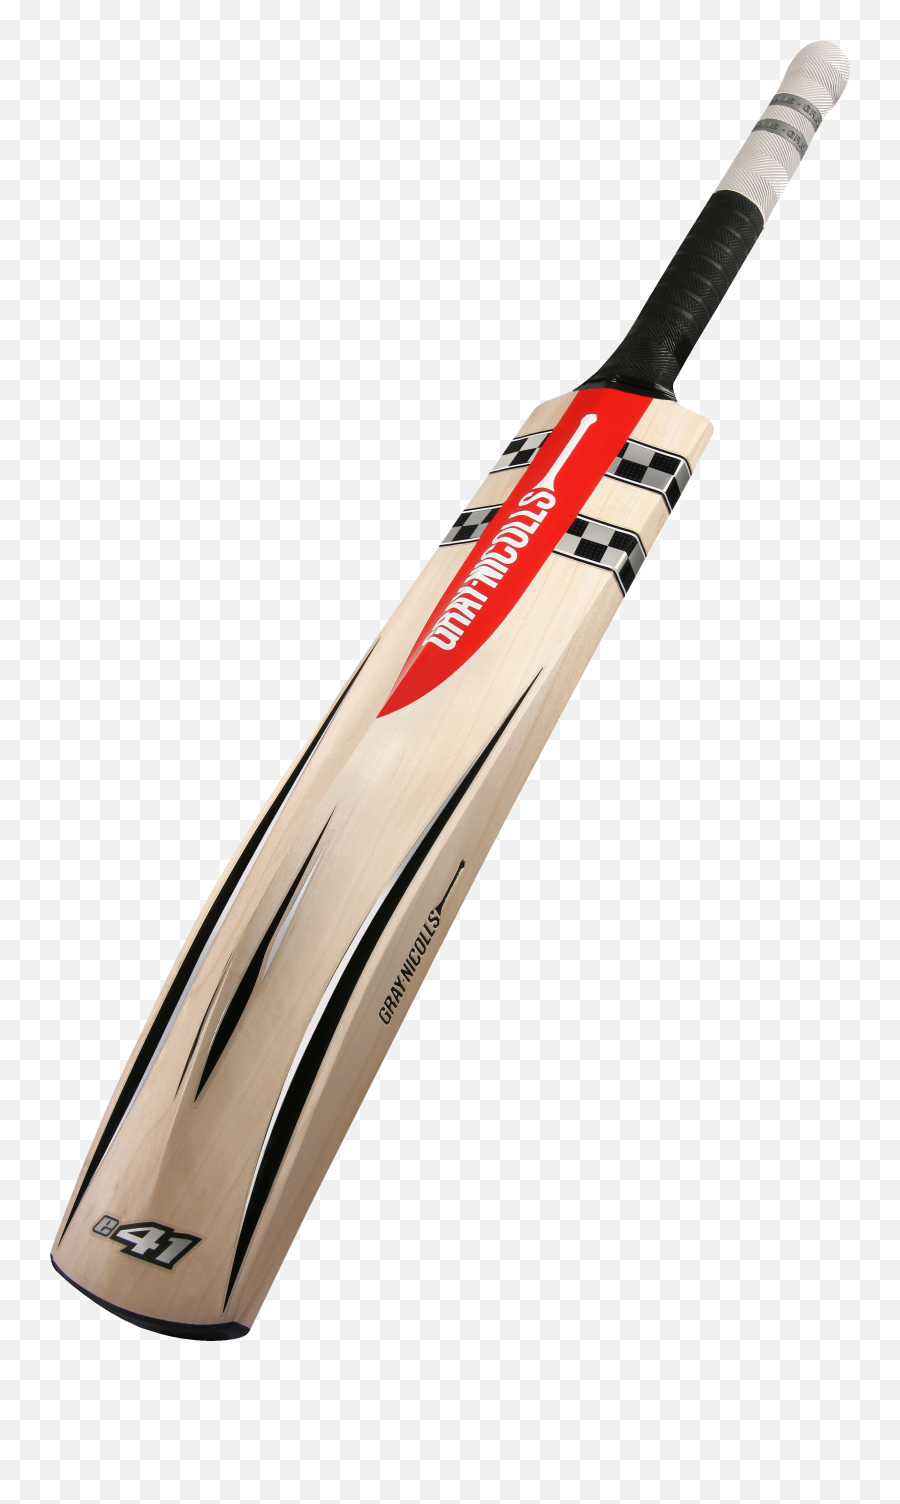 Download Cricket Bat Hq Png Image Free 527829 - Png Gray Nicolls Bat India,Bats Png